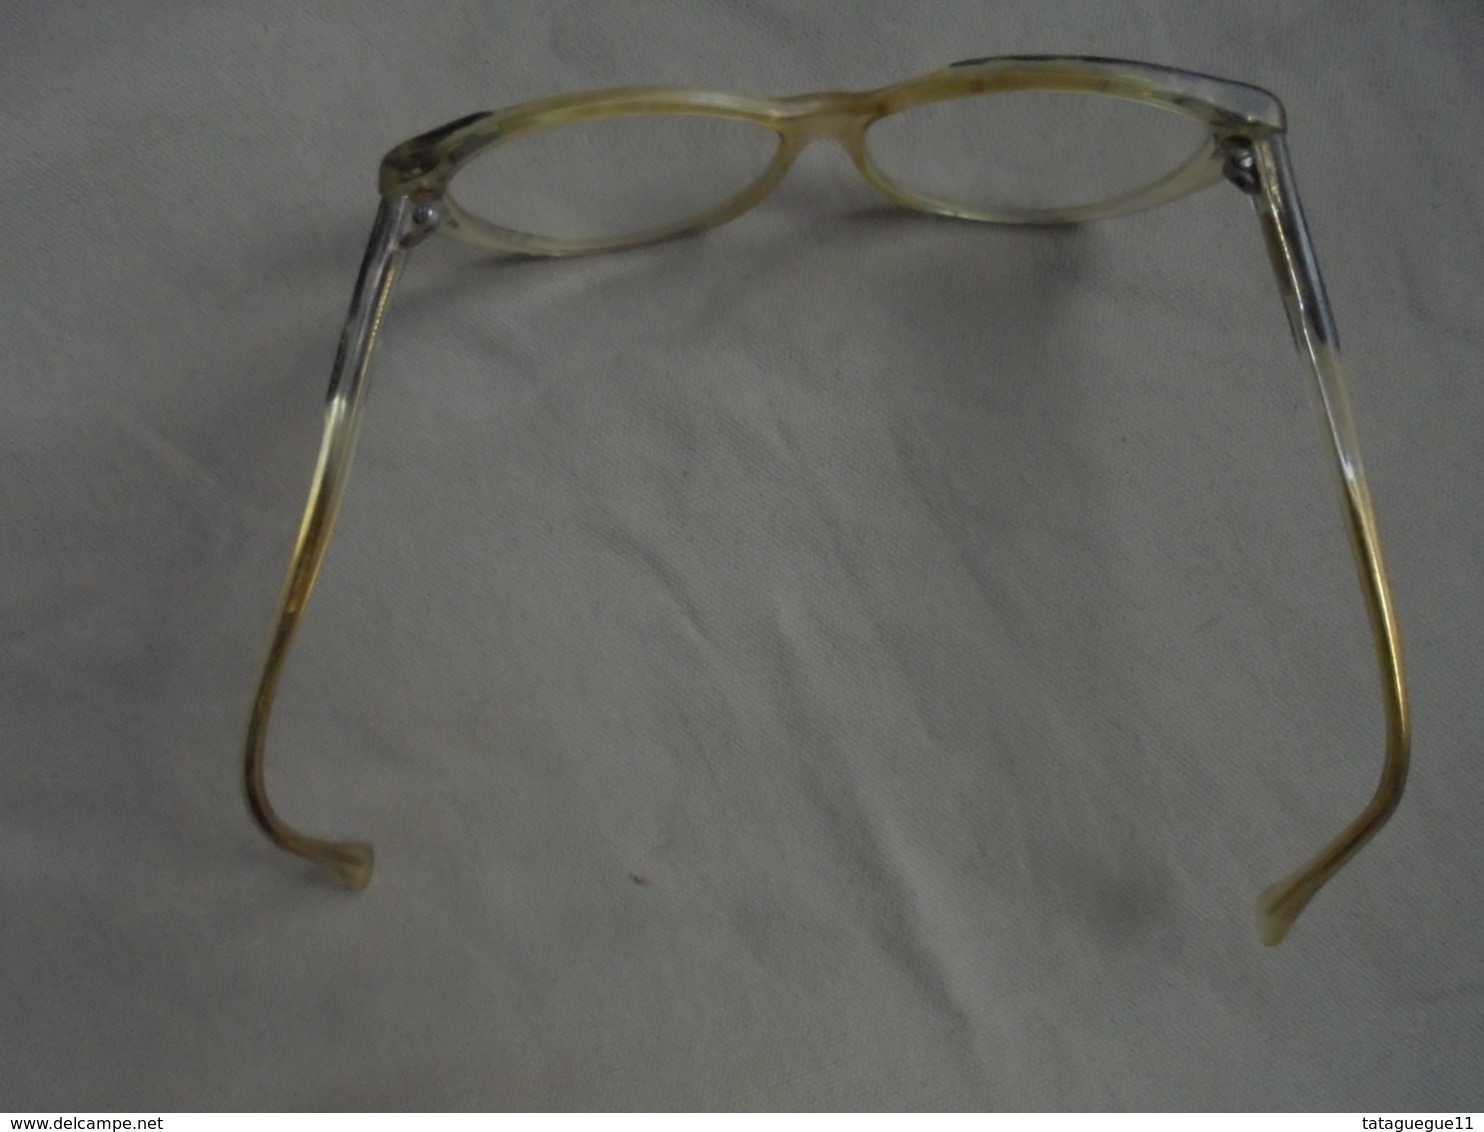 Vintage - Paire de lunettes de vue pour femme AM PERRIS